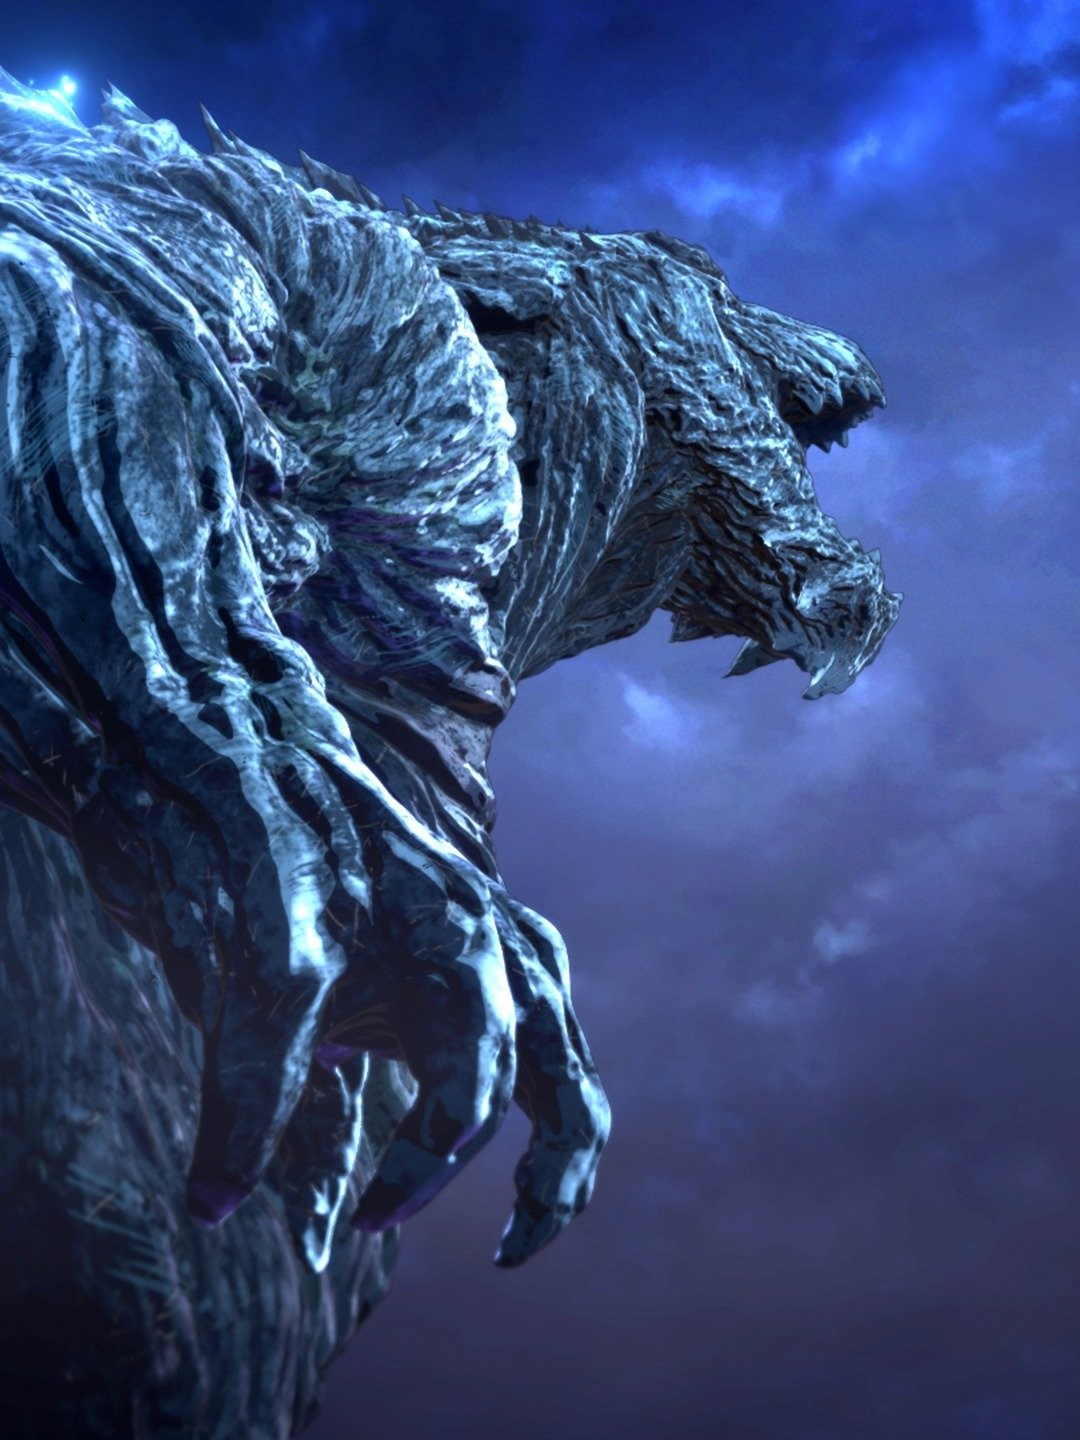 Godzilla: The Planet Eater - Wikipedia